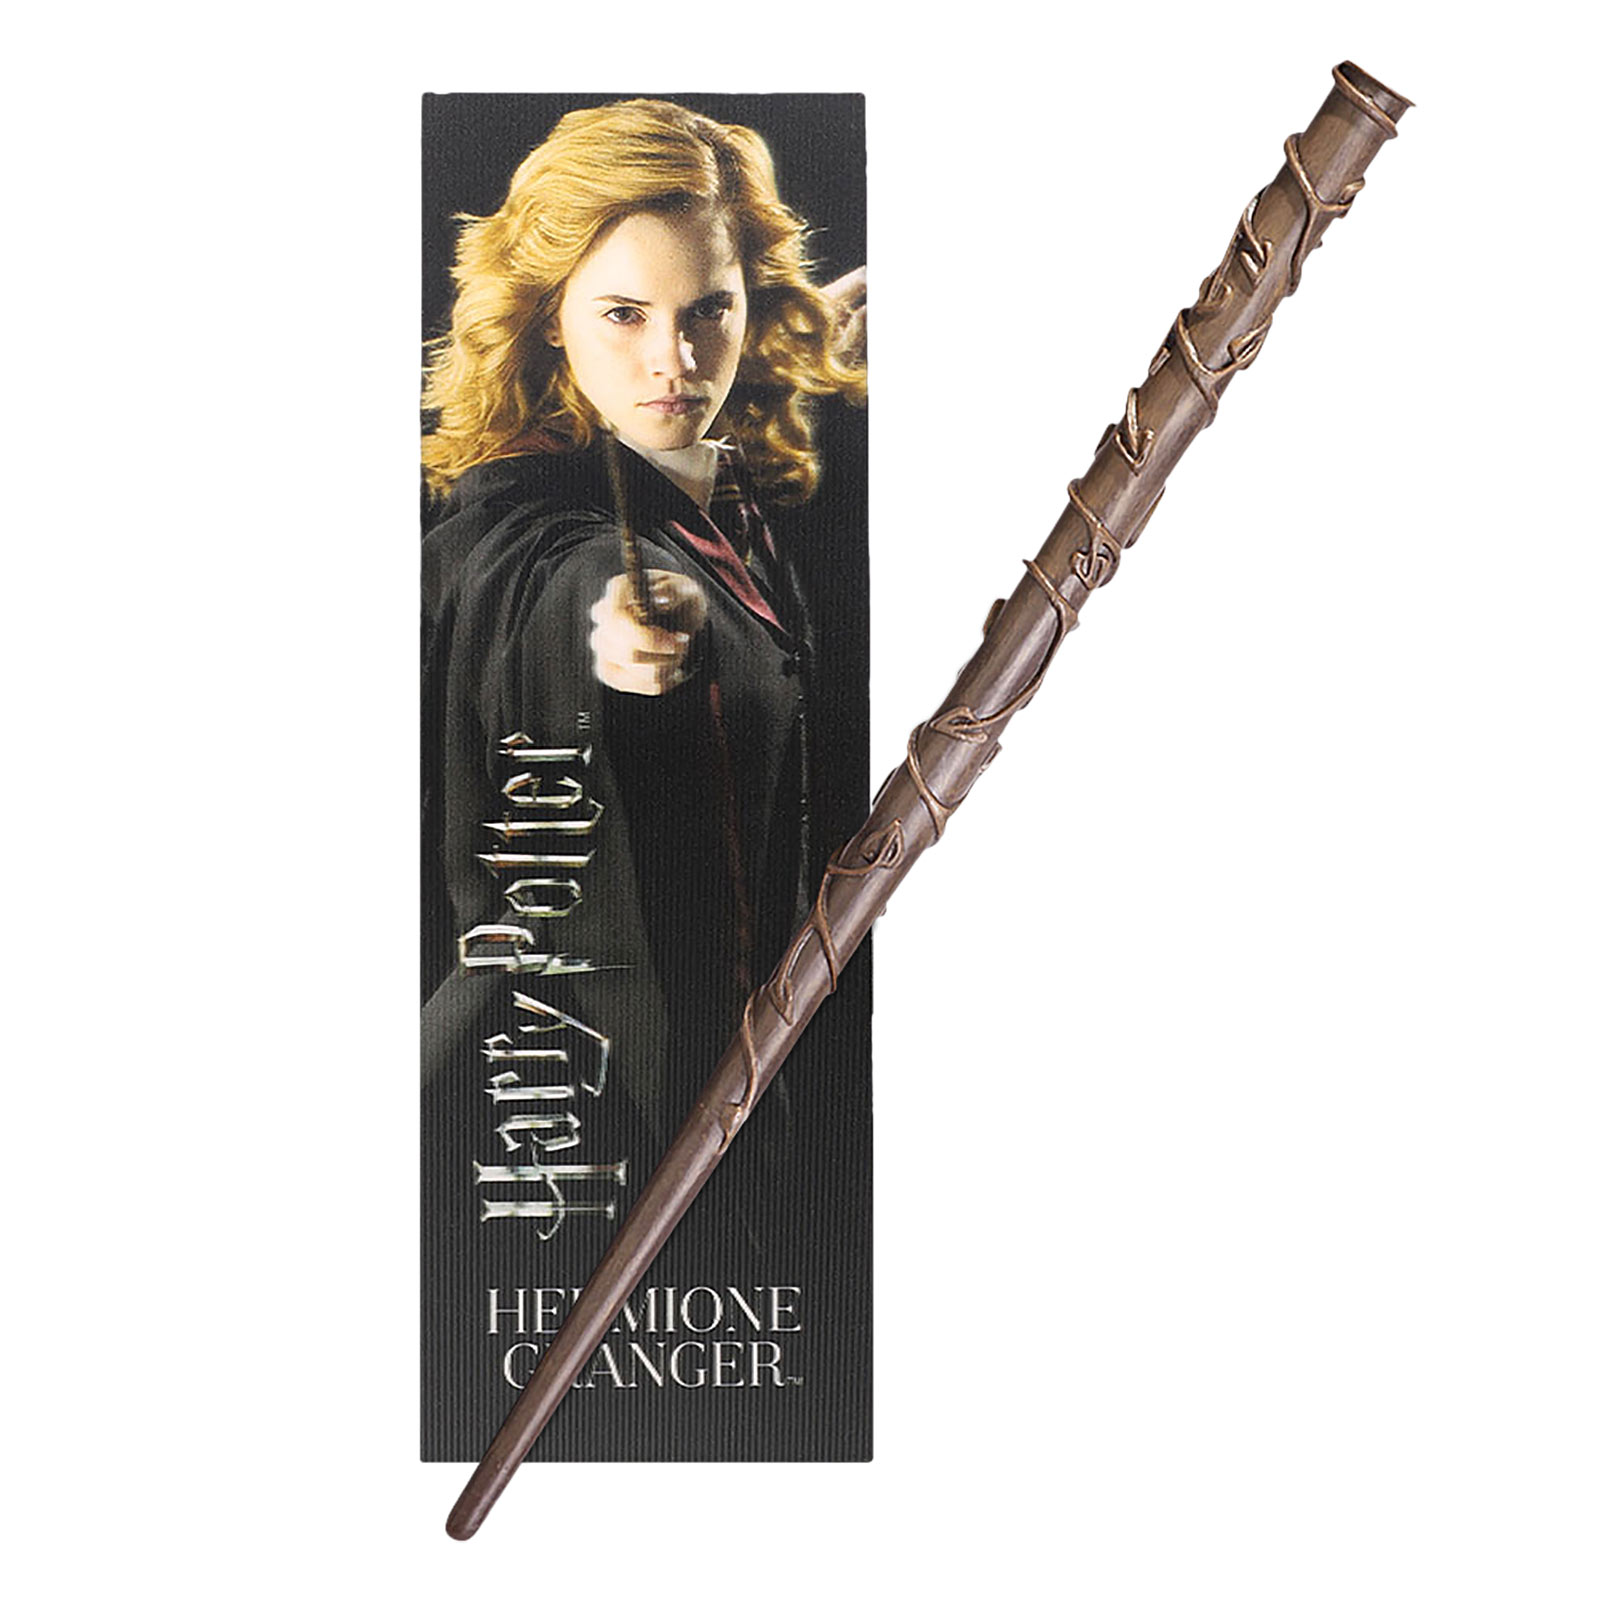 Hermione's toverstaf voor jonge tovenaars met bladwijzer - Harry Potter